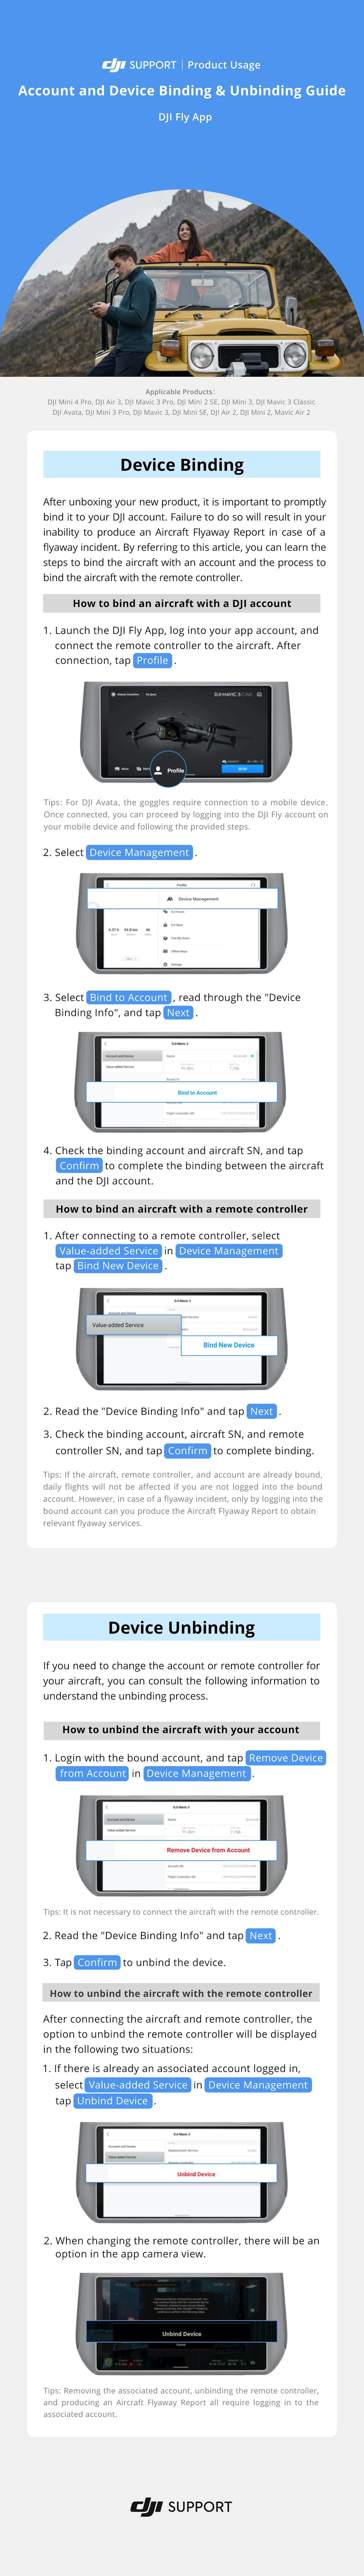 En infografik från DJI Support visar hur man binder och avbinder konto och enhet i DJI Fly-appen. "Device Binding" inkluderar steg för att binda en drönare till ett DJI-konto. "Device Unbinding" visar hur man avbinder en drönare.